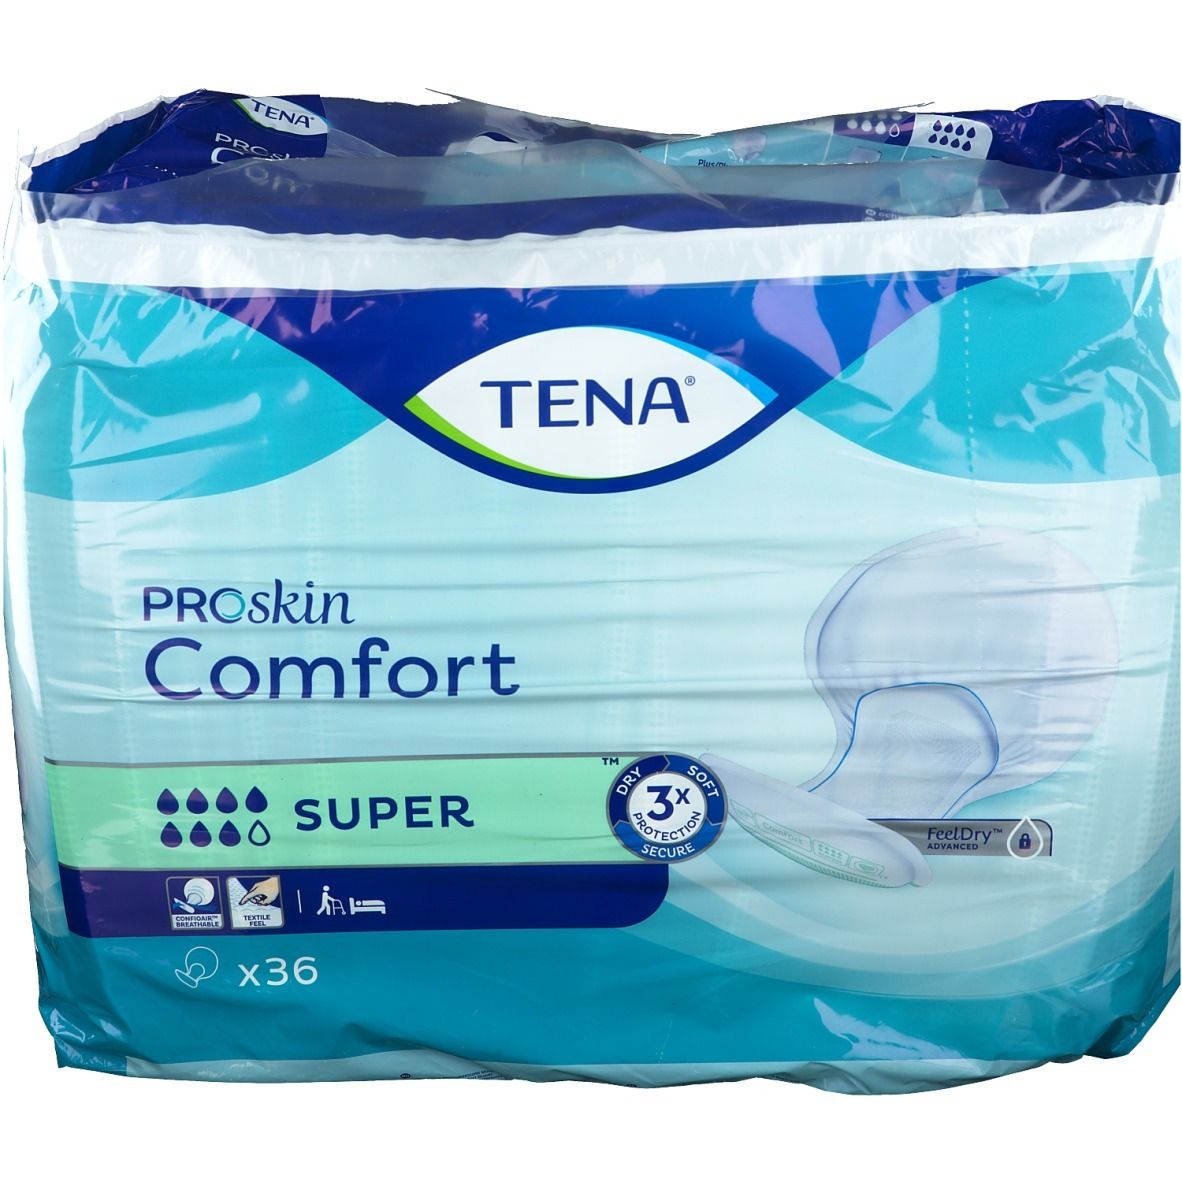 TENA ProSkin Comfort Super